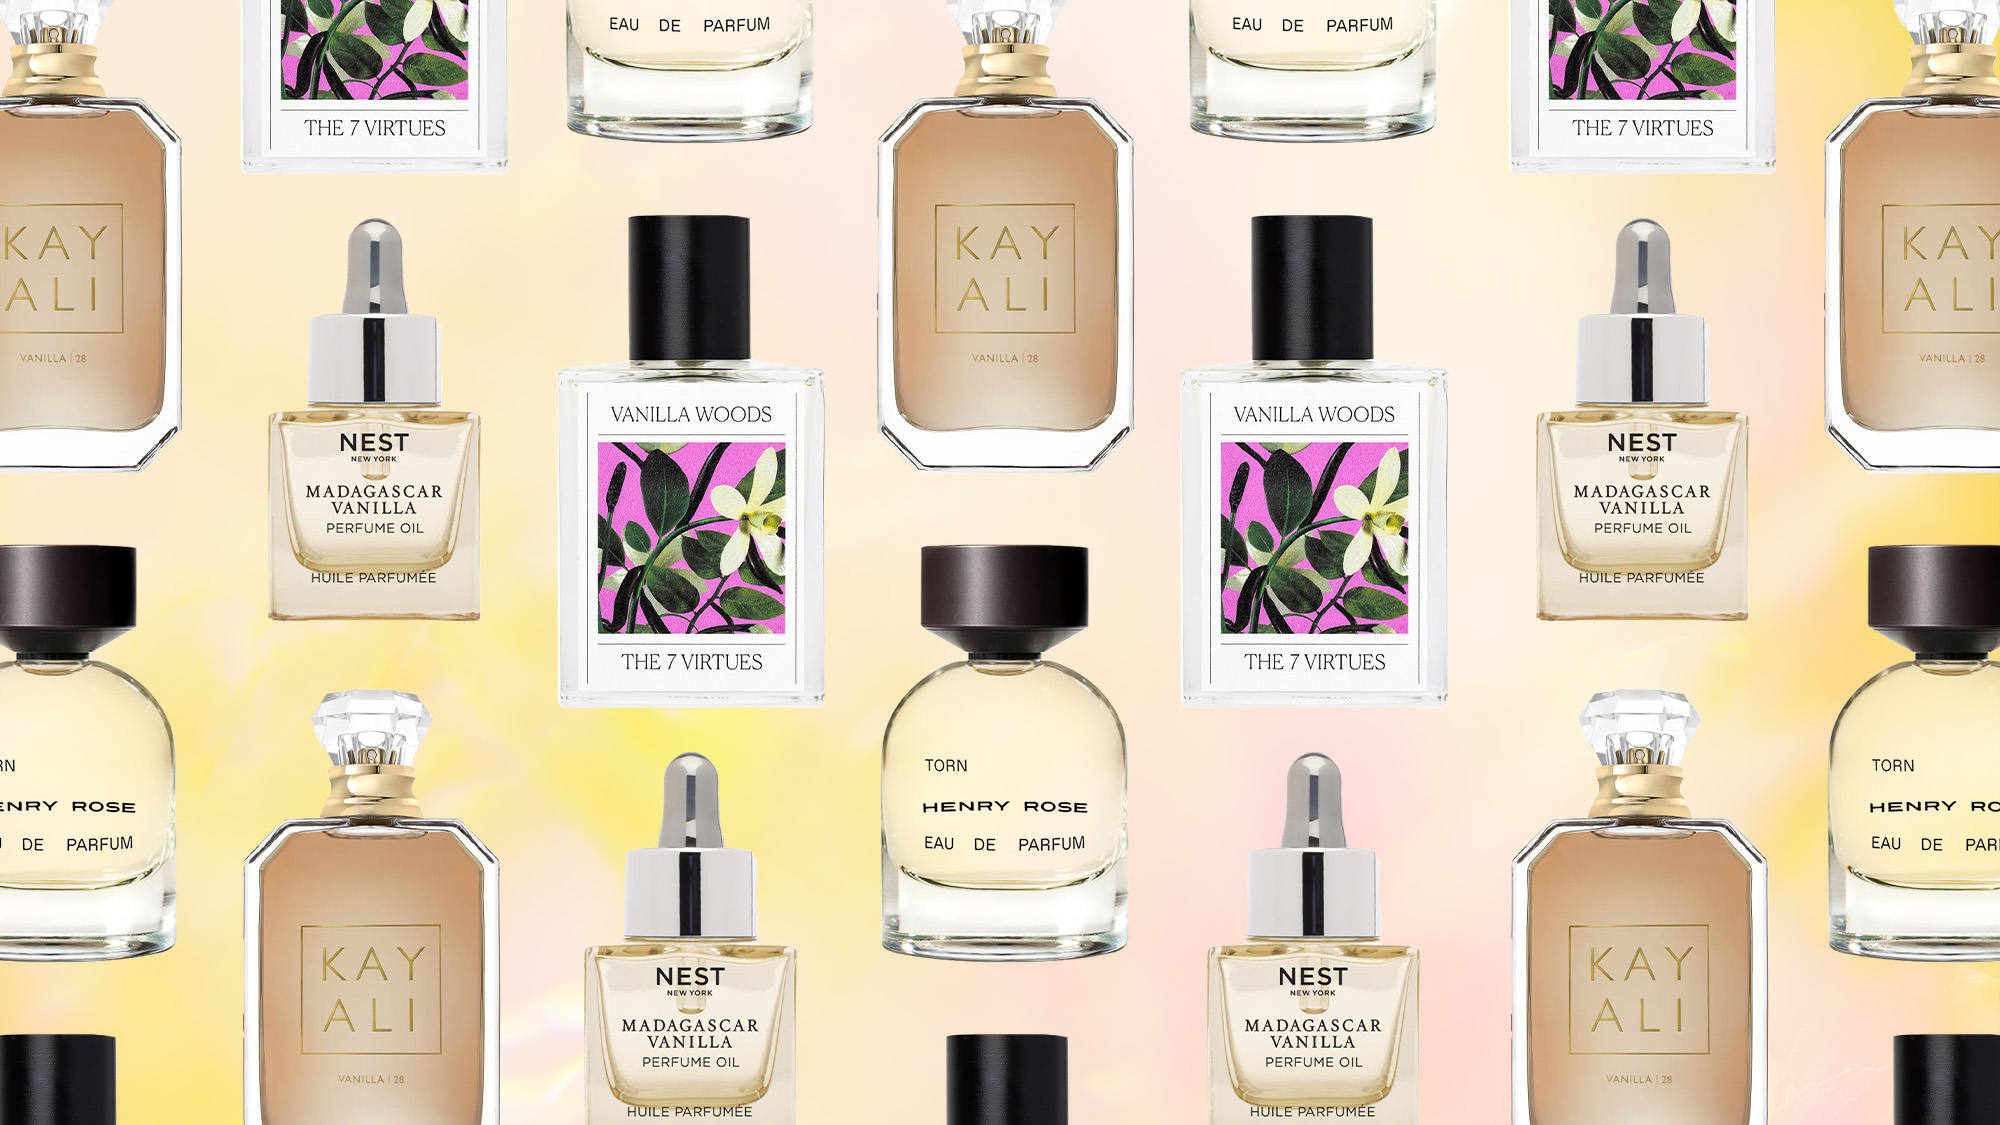 Vanille Rêve Parfum | Luxury Spray Bottle